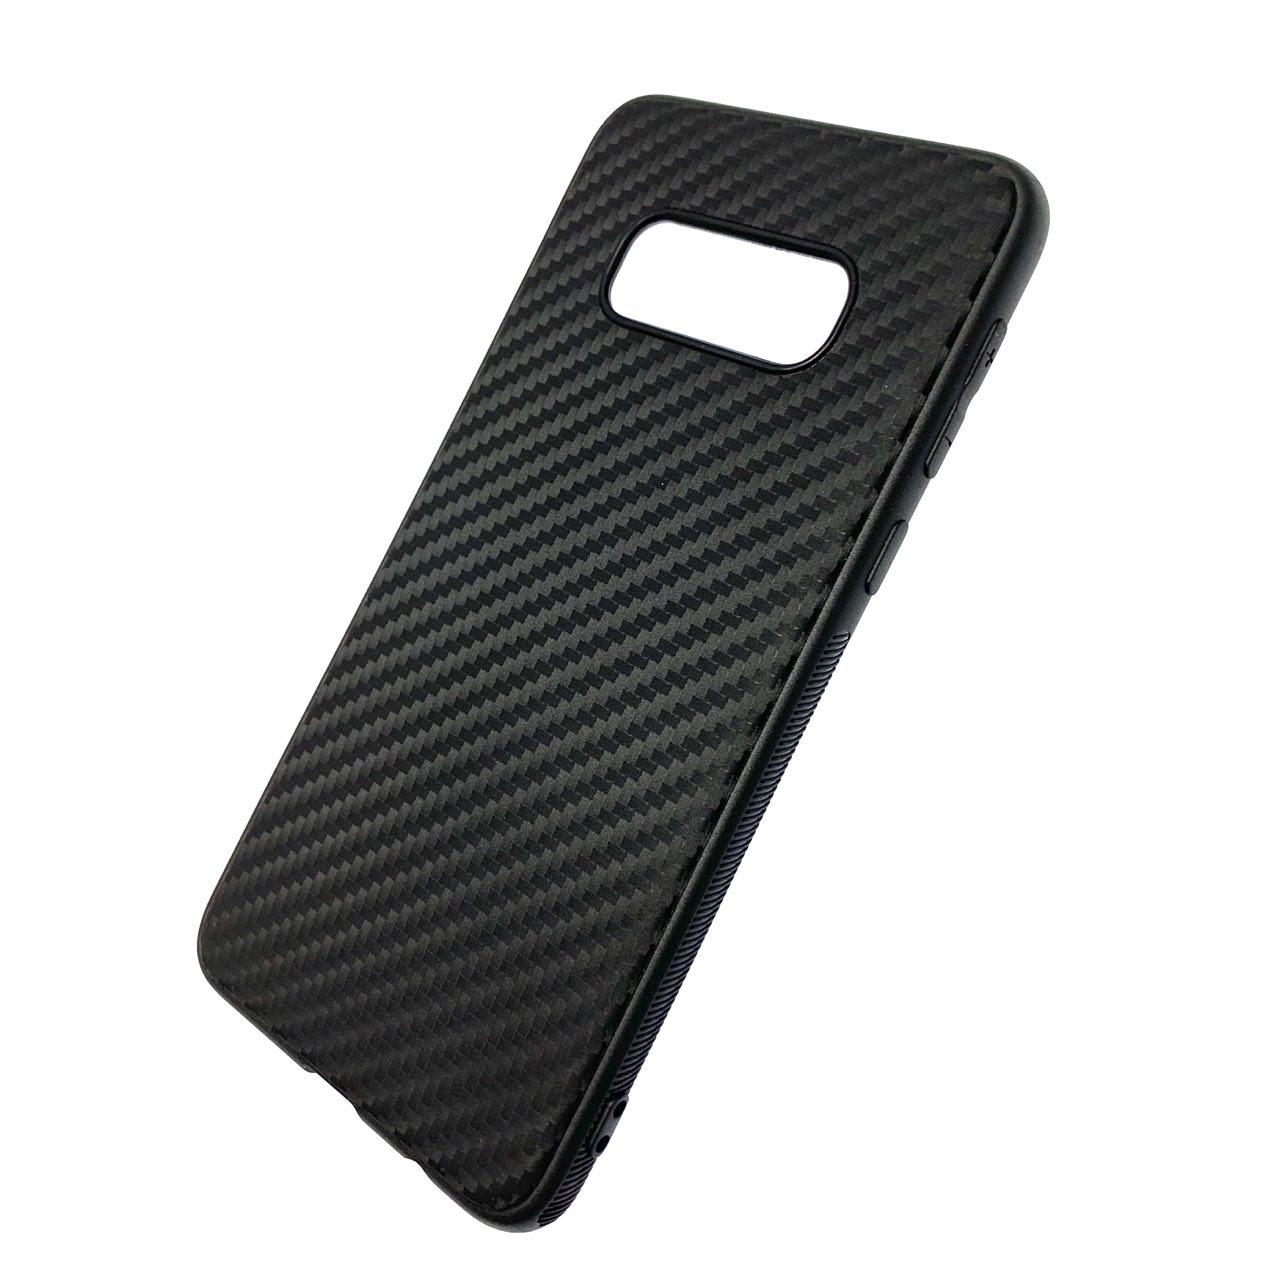 Чехол накладка Carbon для SAMSUNG Galaxy S10e (SM-G970), силикон, цвет черный.